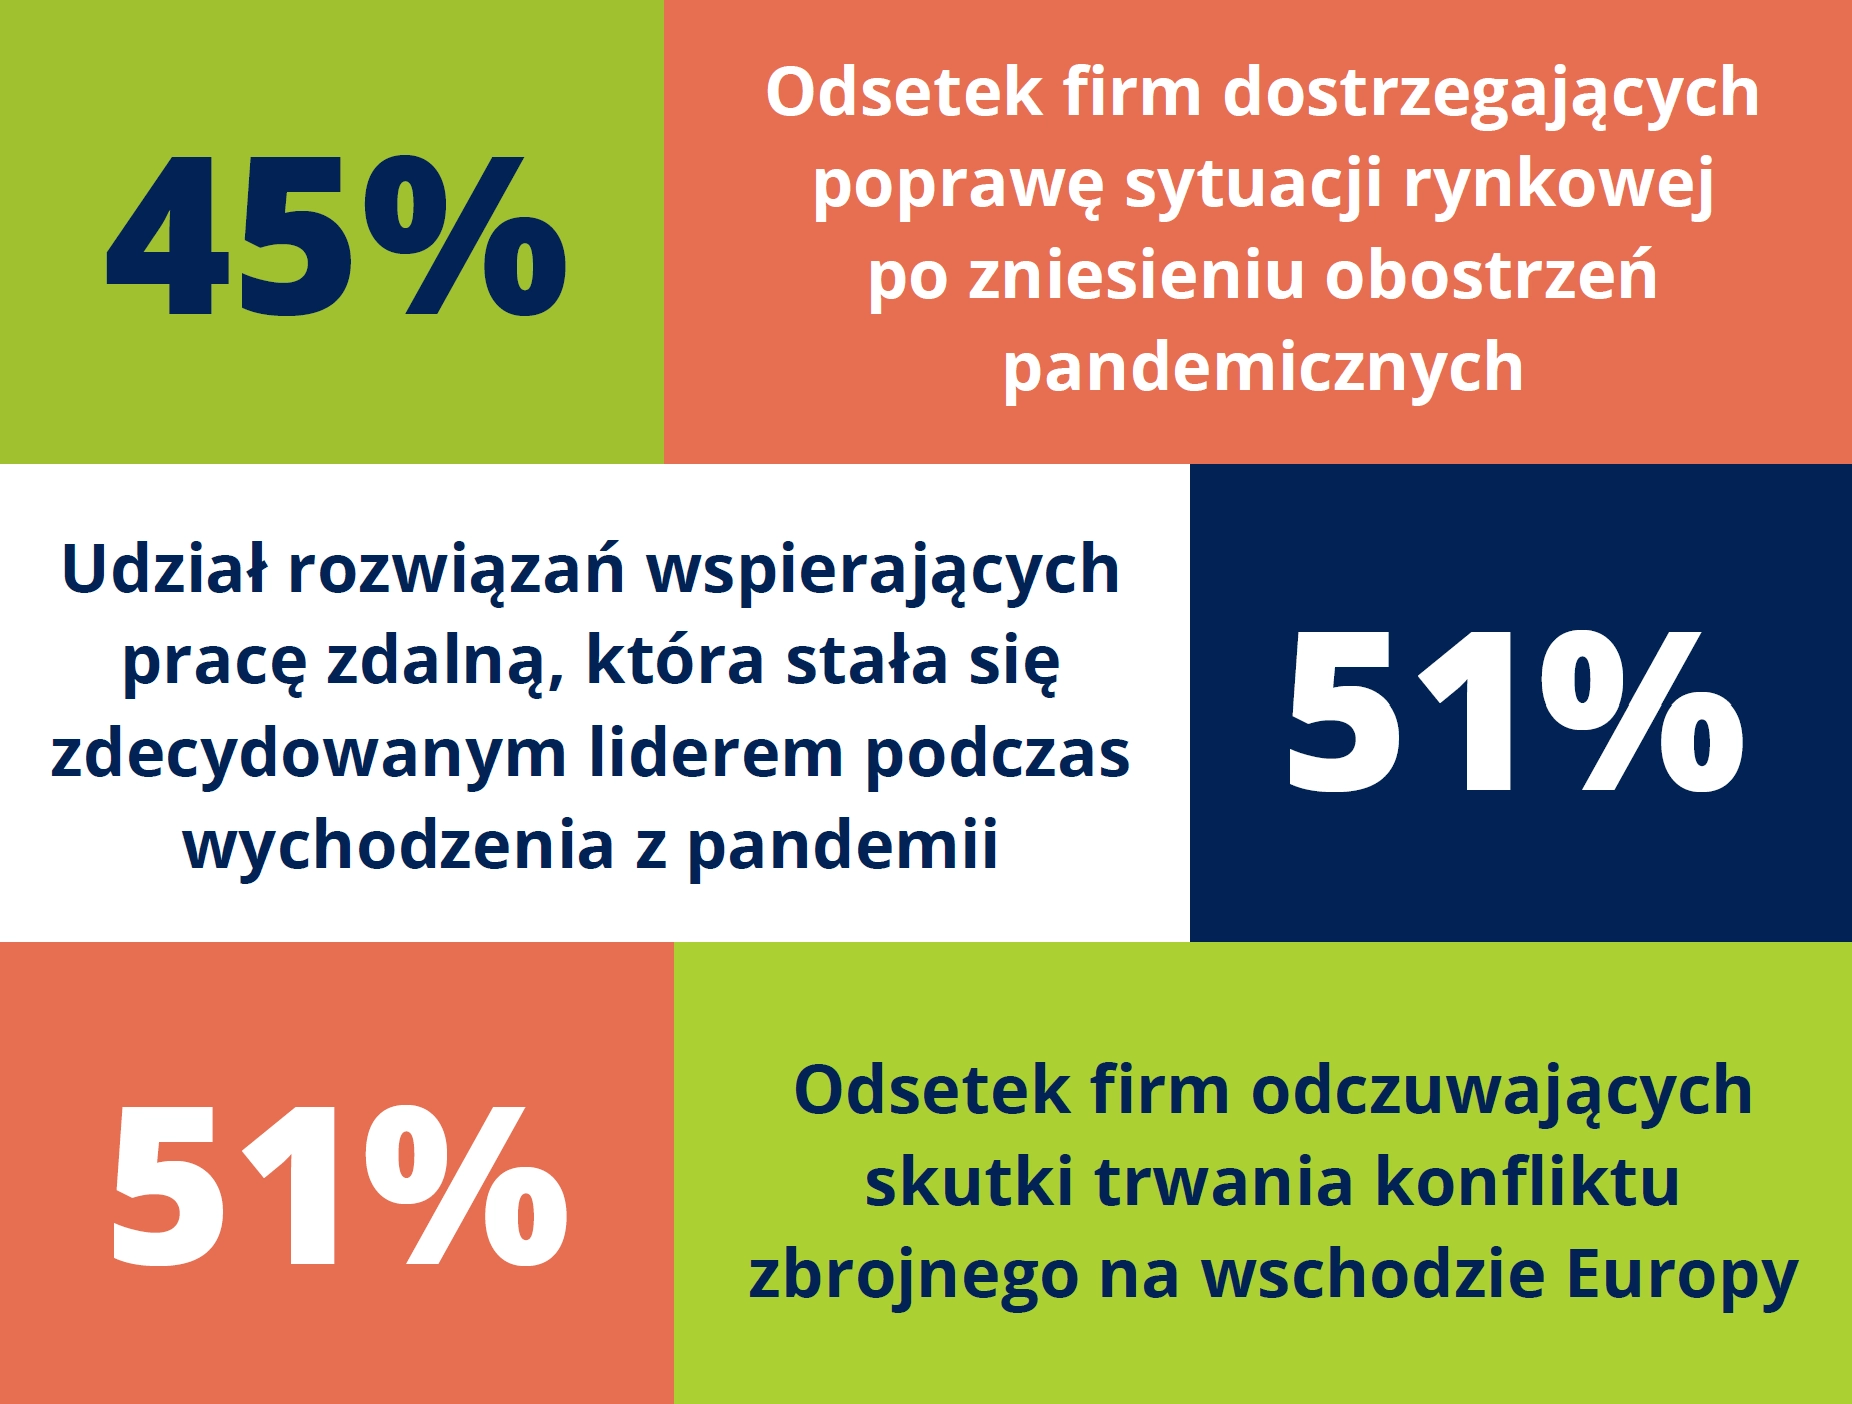 Główne wnioski z raportu - Rynek systemów ERP w Polsce dzisiaj.